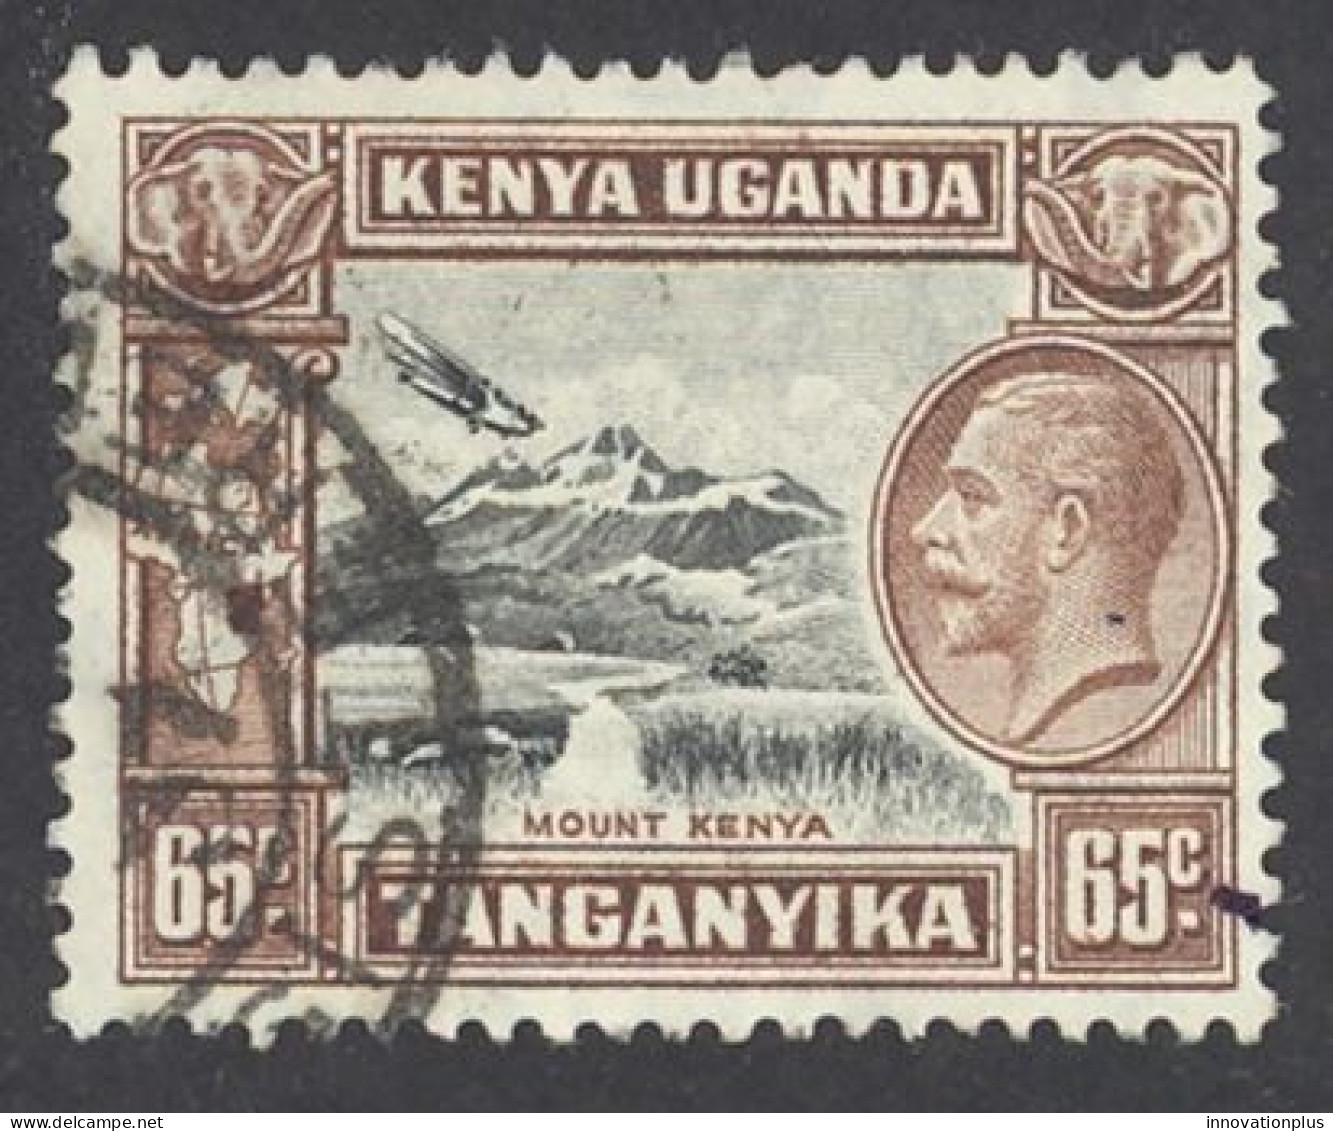 Kenya, Uganda, Tanzania Sc# 53 Used 1935 65c King George V - Kenya, Uganda & Tanzania